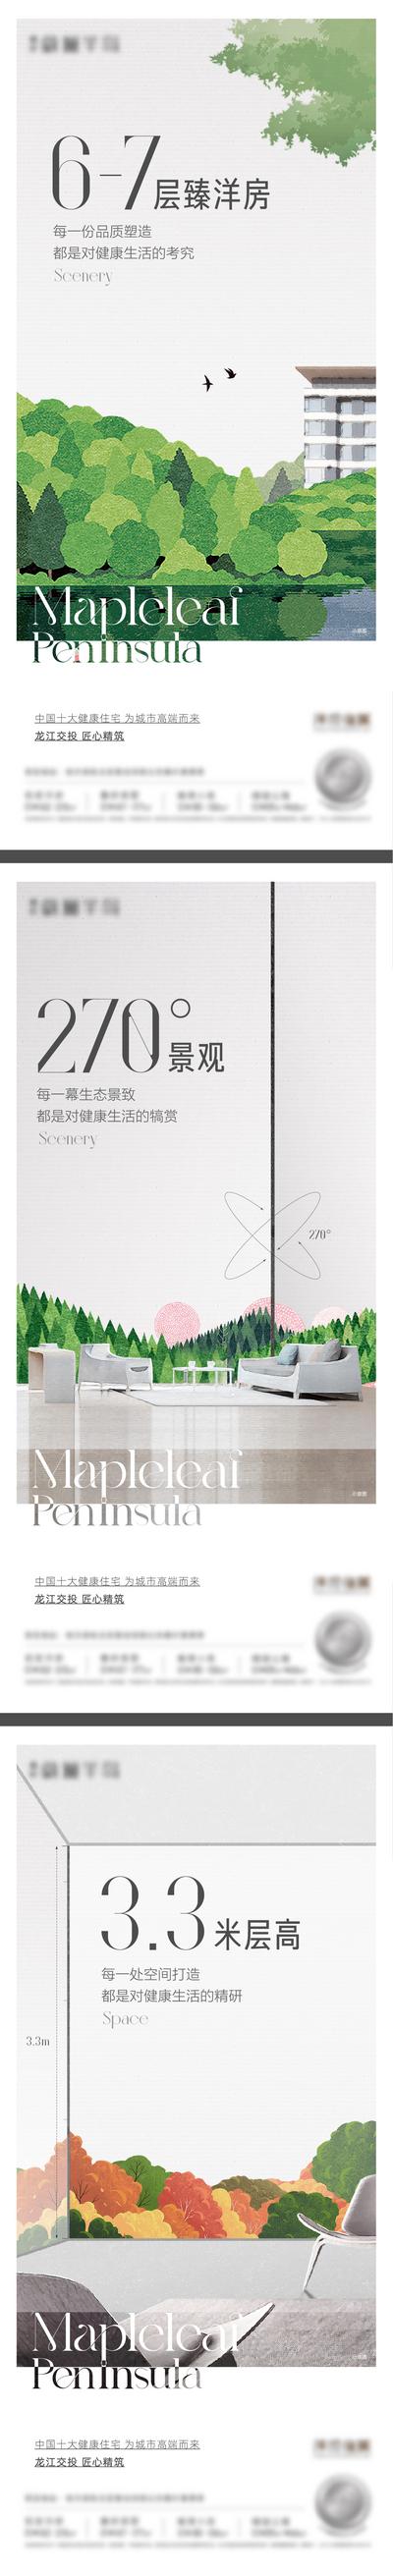 南门网 广告 海报 地产 洋房 价值点 社区 园林 景观 户型